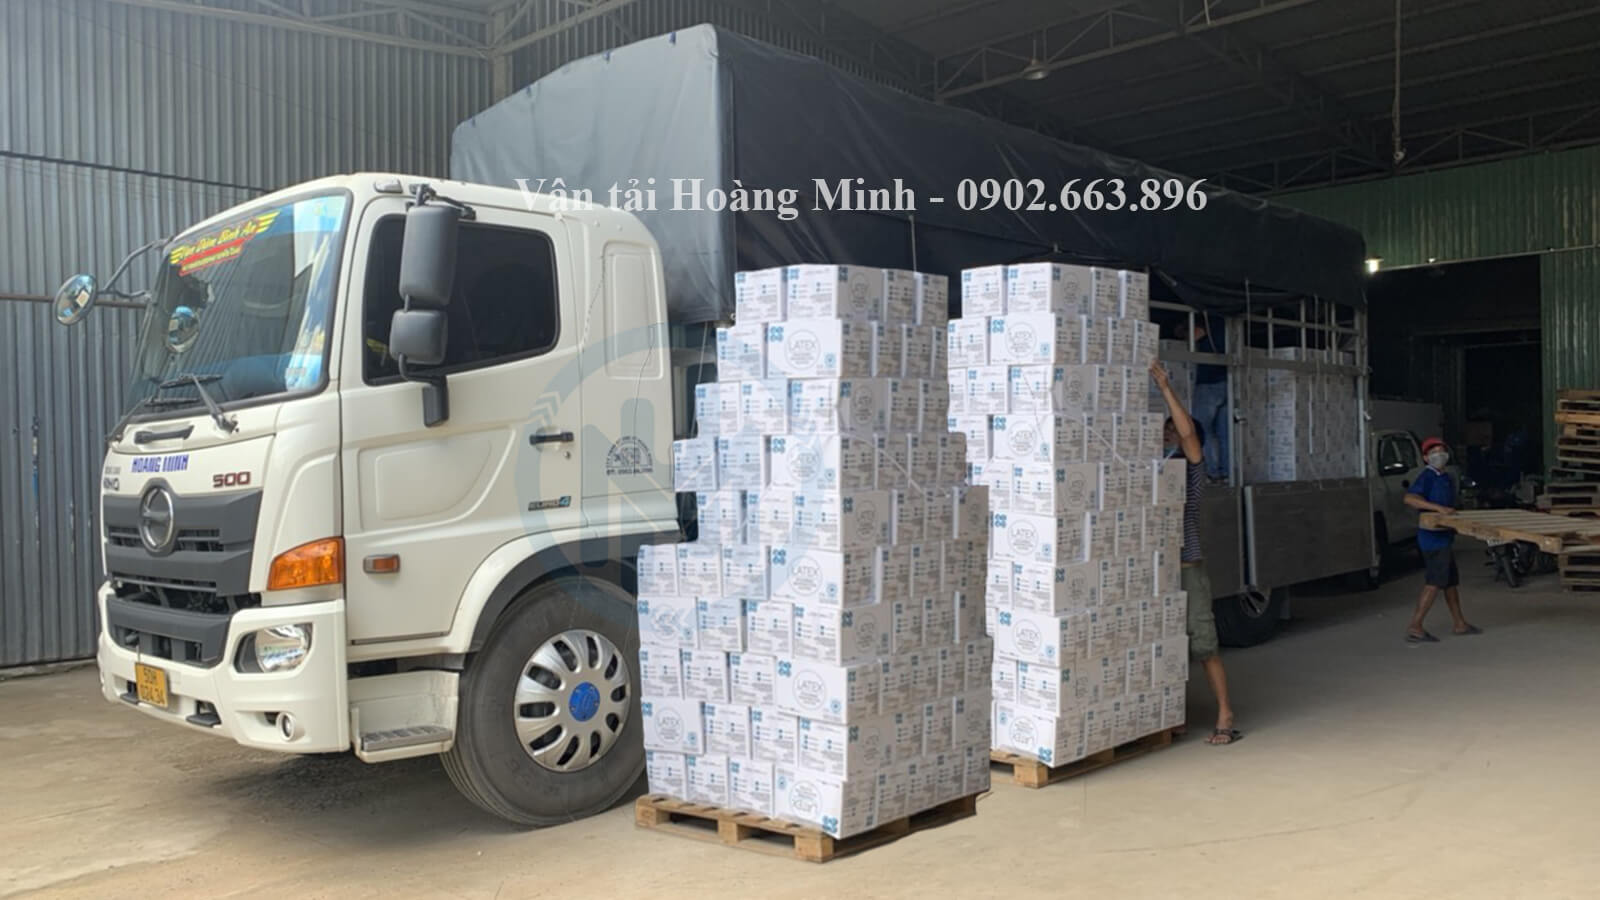 Vận tải Hoàng Minh đa dạng xe tải cho thuê.jpg